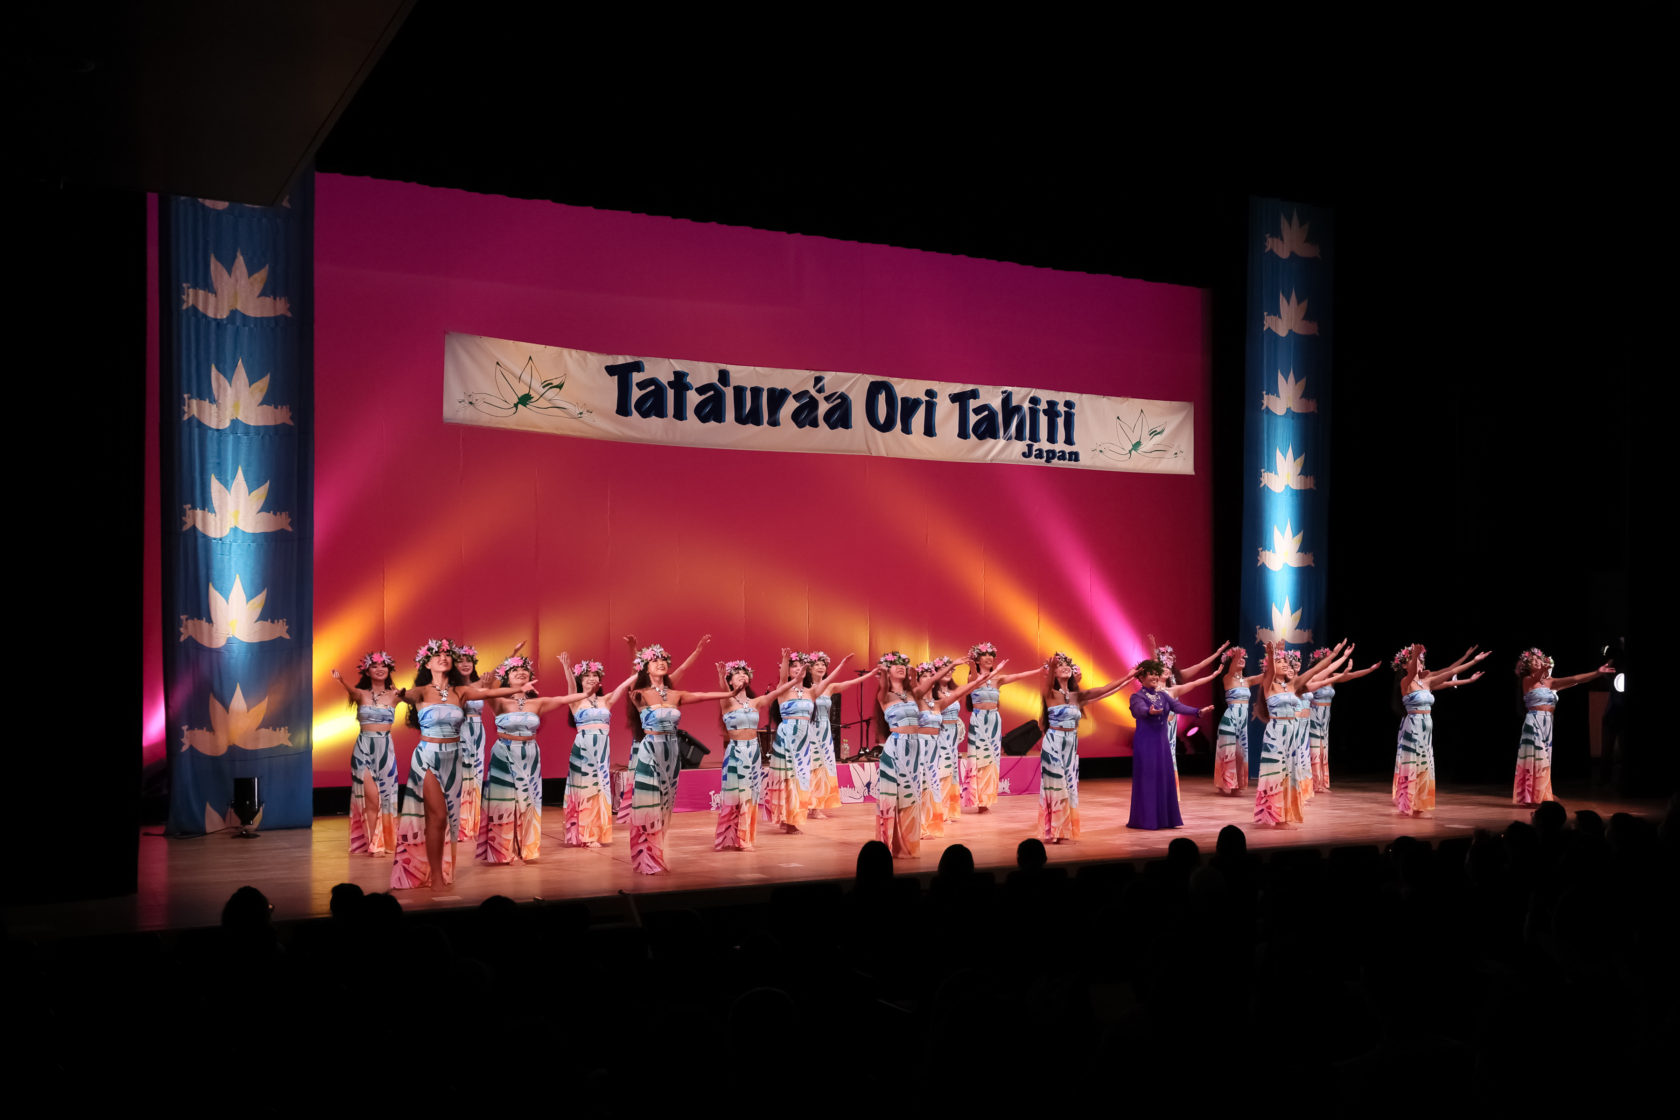 Tata’ura’a Ori Tahiti Japan 2022